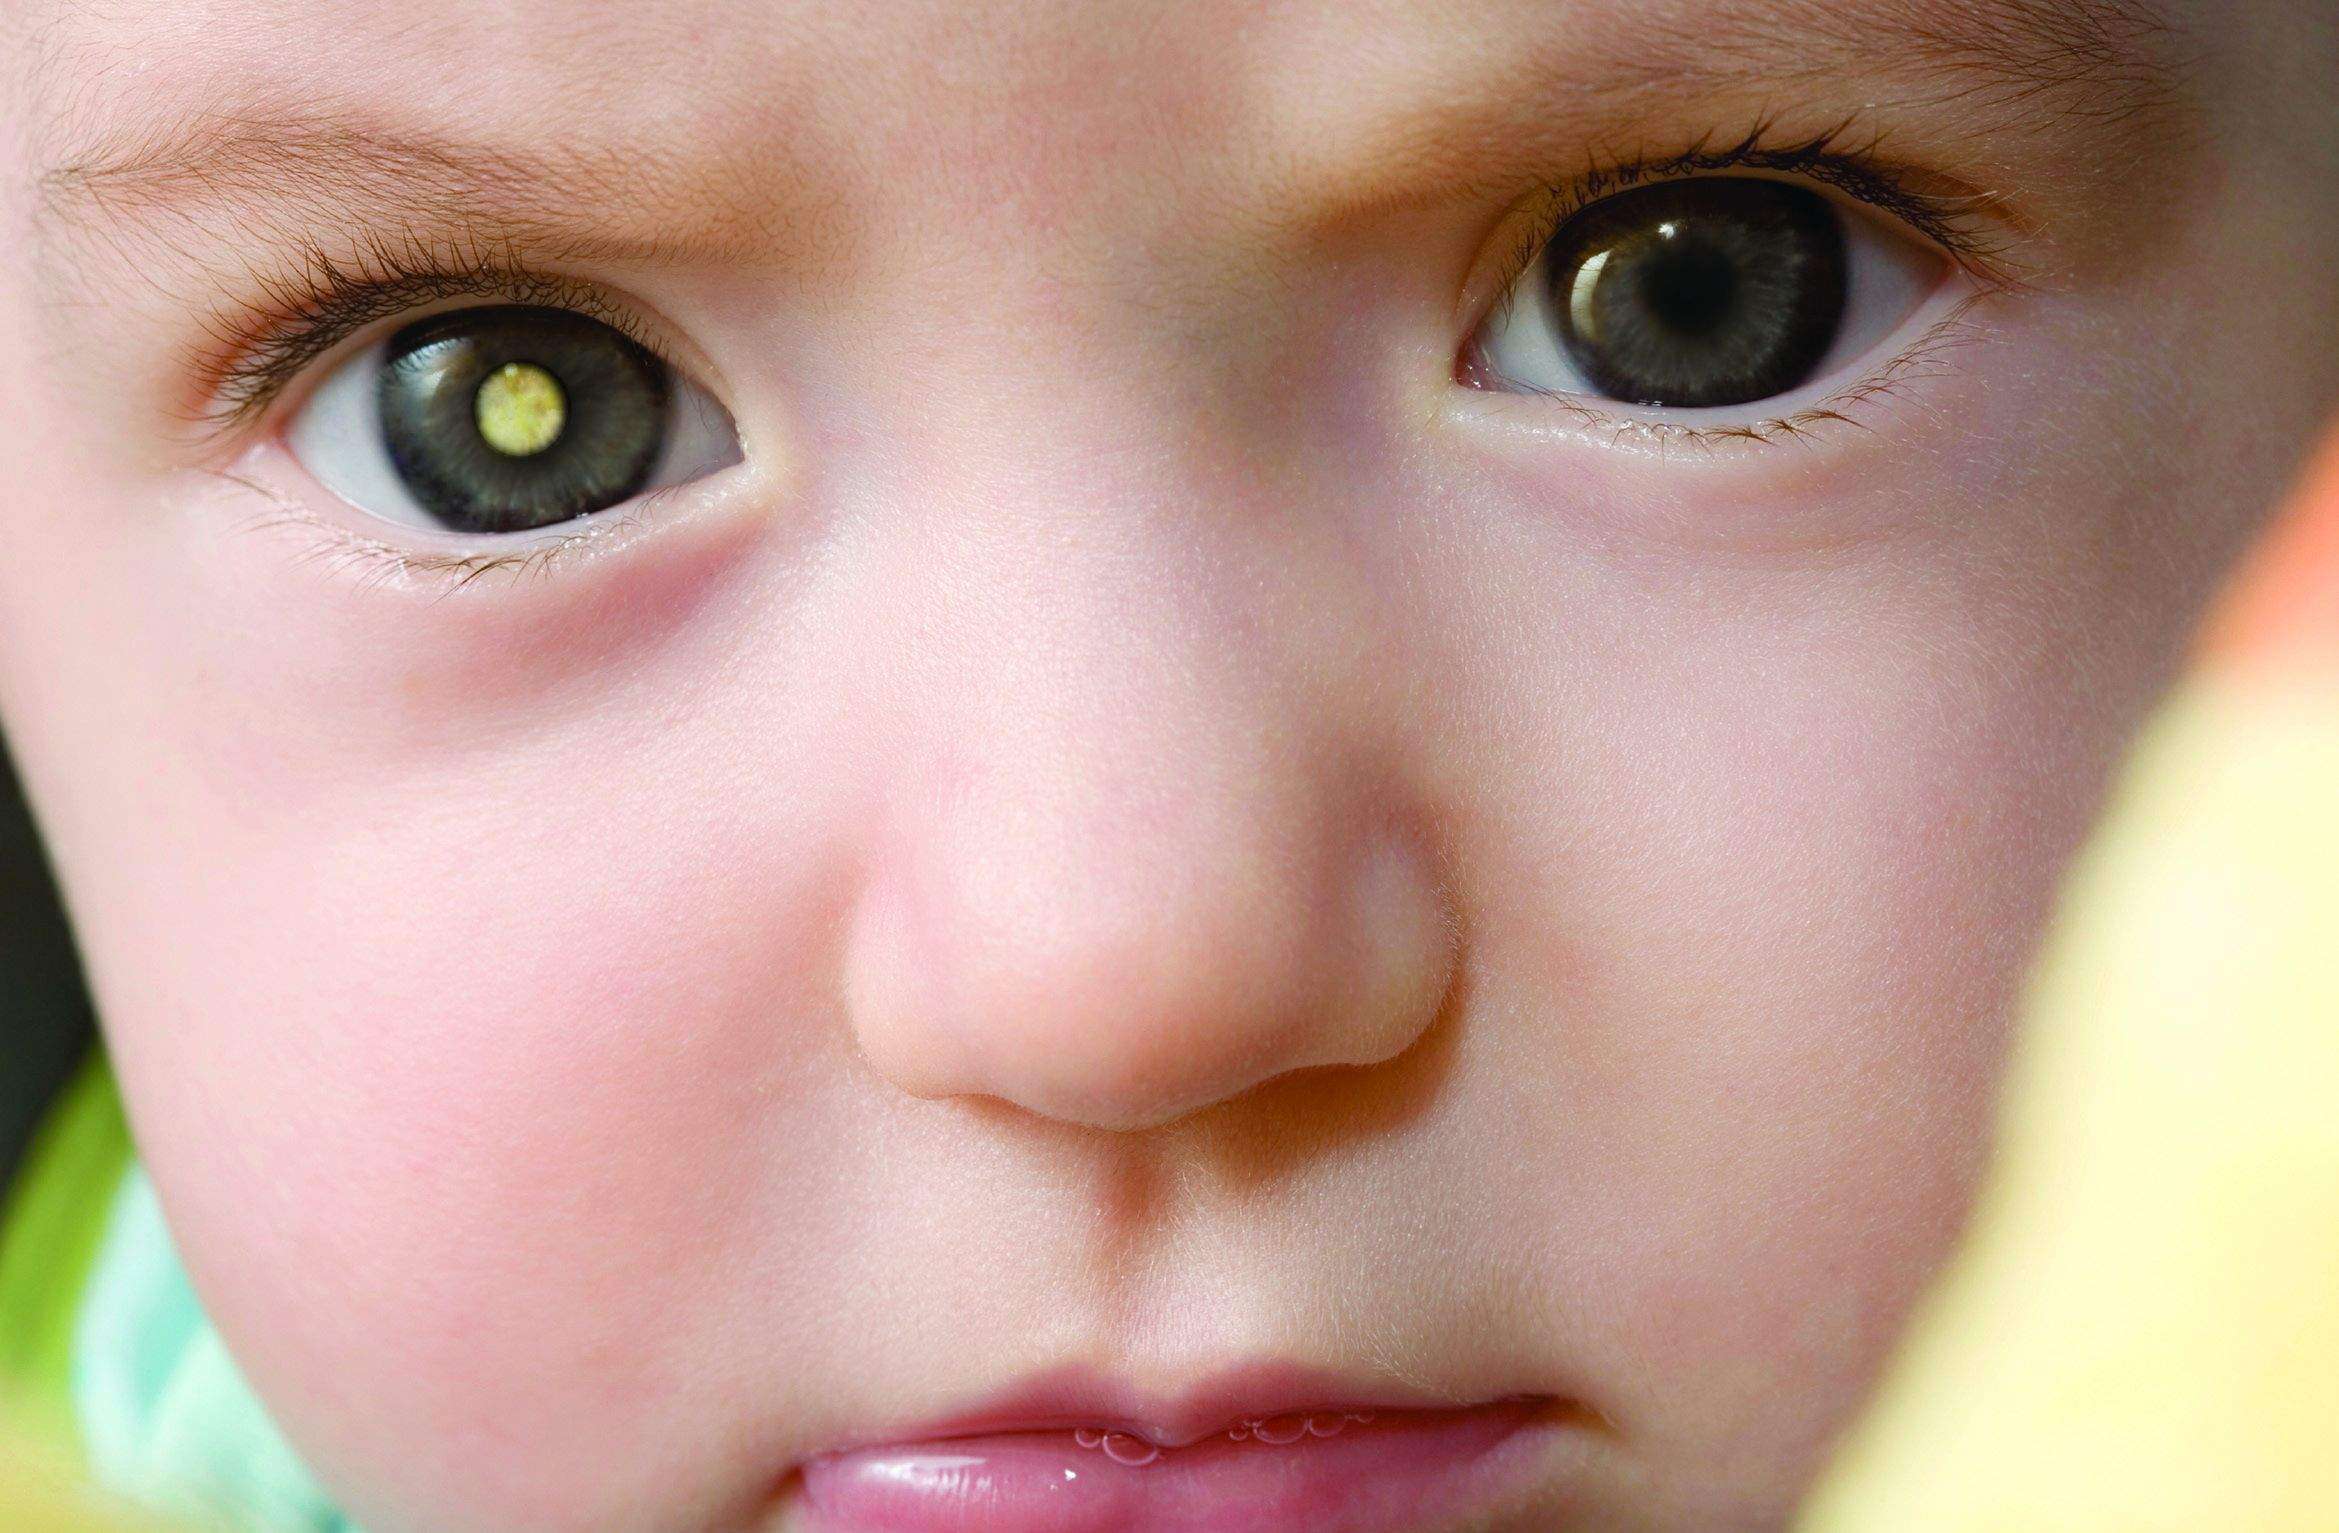 سرطان العين عند الاطفال و الرضع